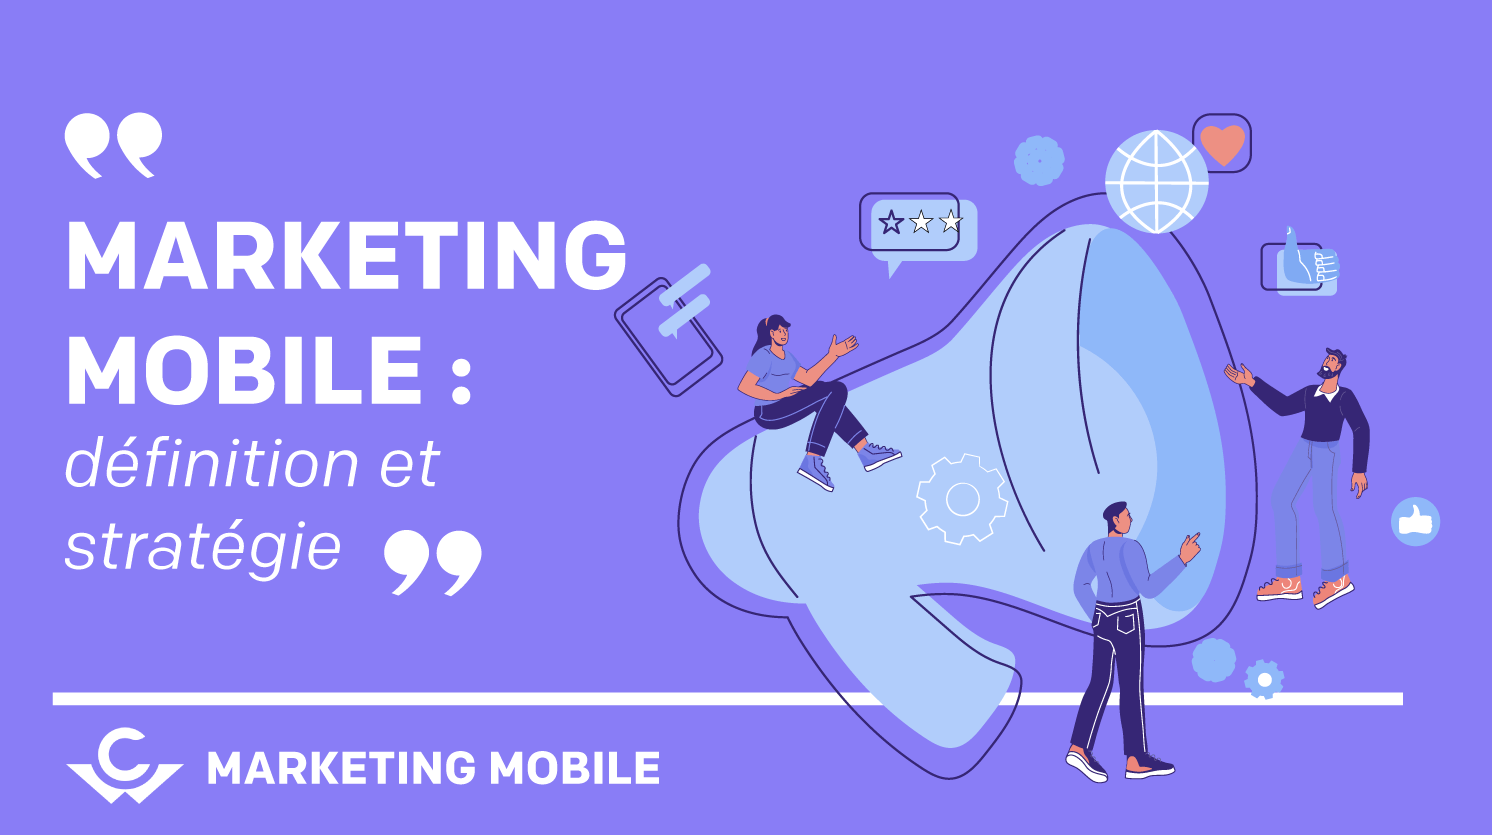 Visuel Marketing mobile : définition et stratégie